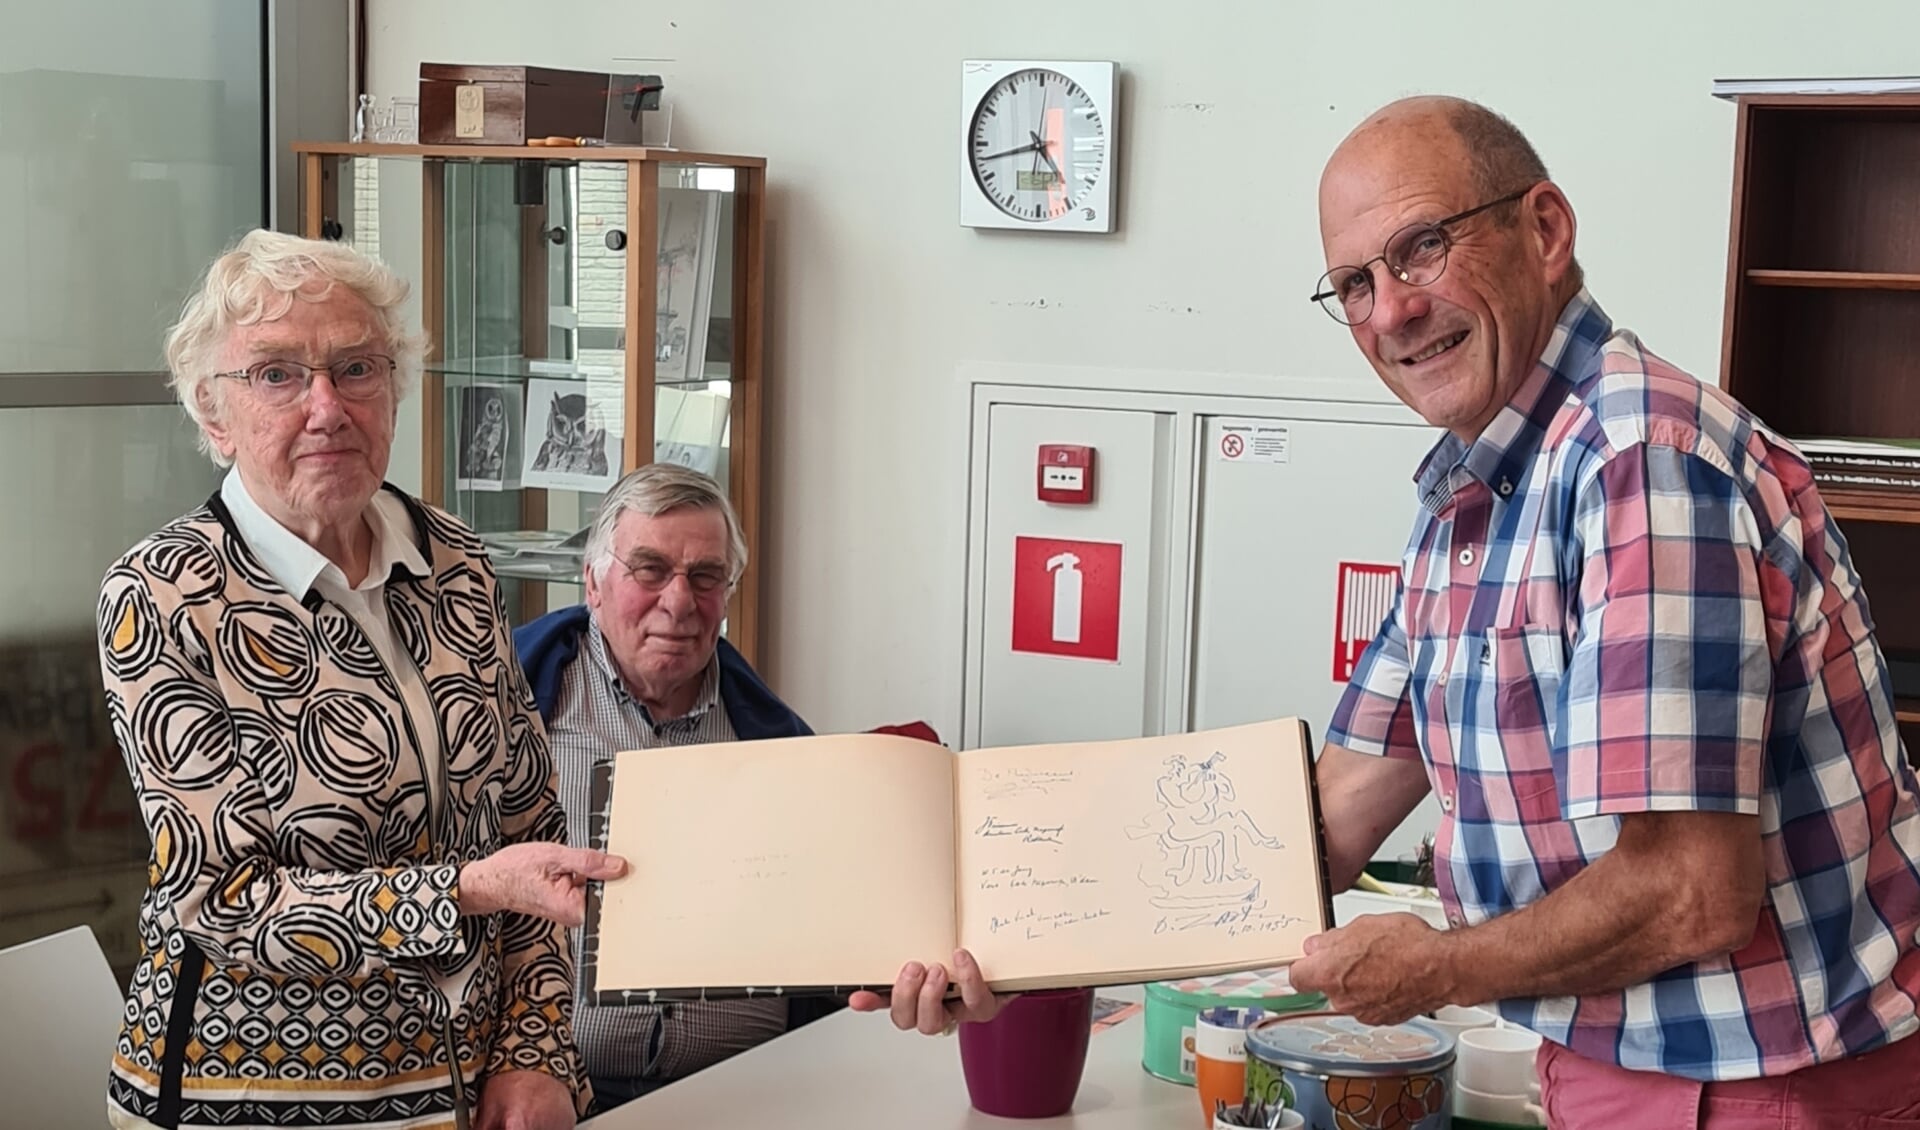 Tomado-secretaresse Willy van Eyk overhandigt een receptiealbum aan Piet Paantjens van de Heemkundekring Jan uten Houte.